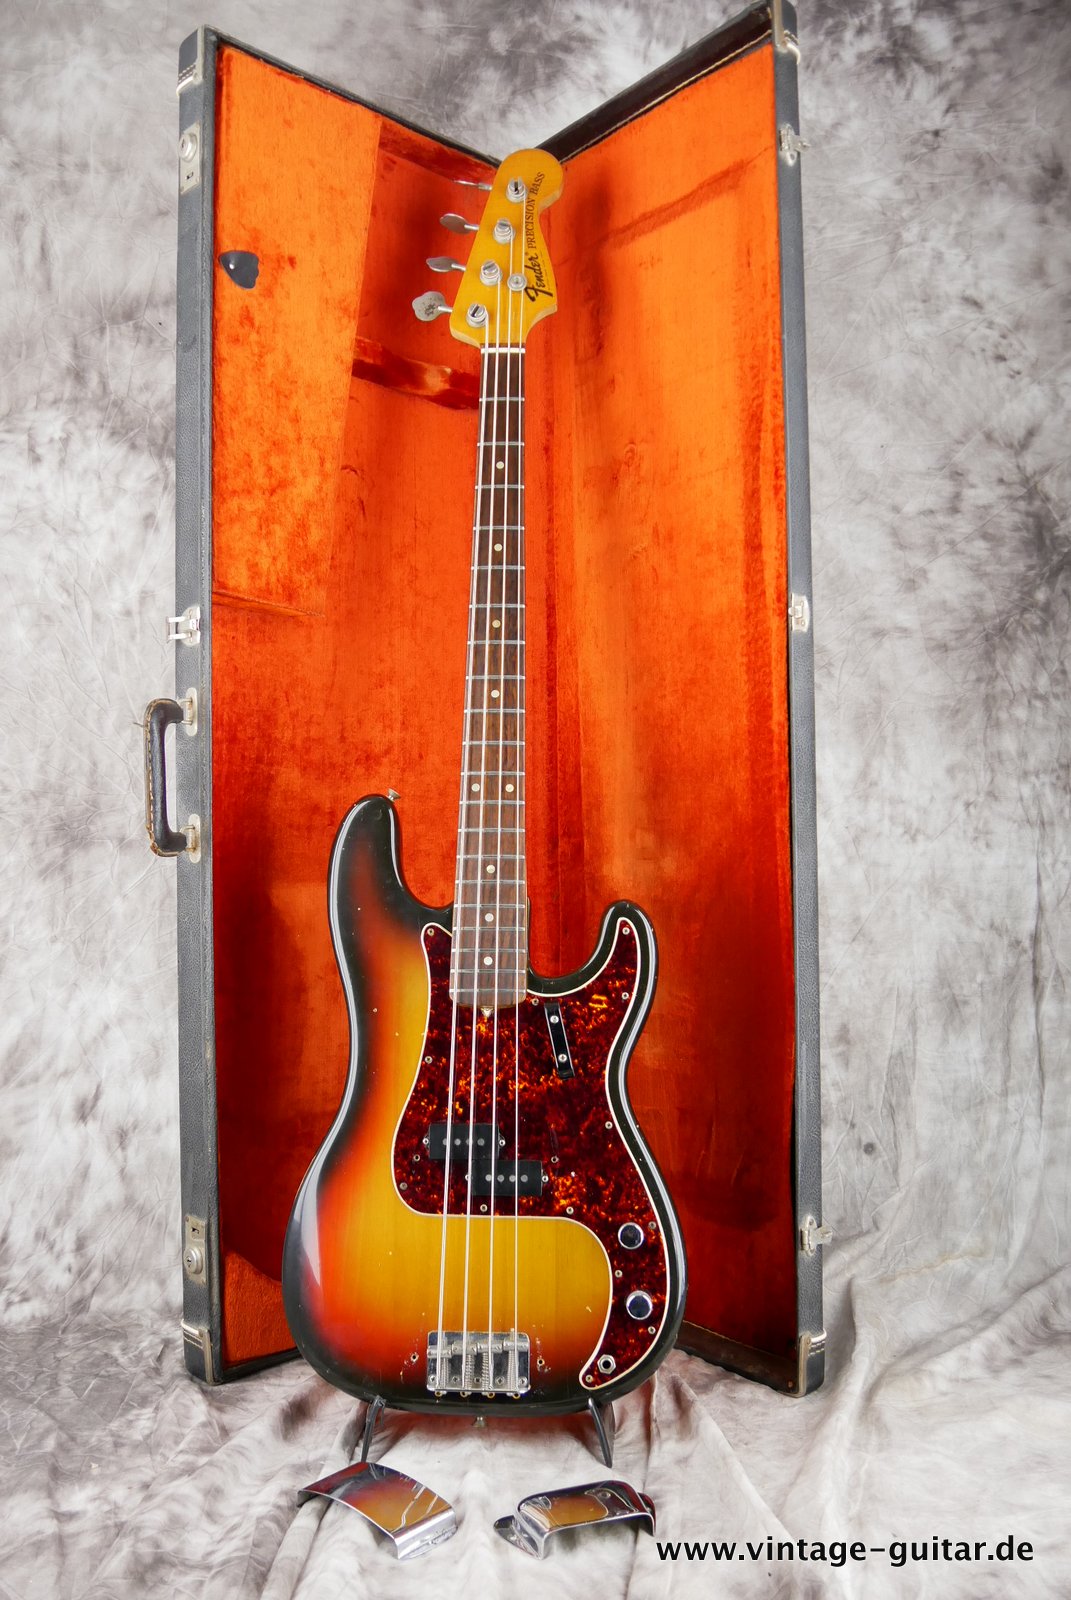 Fender-Precision-Bass-sunburst-1969-021.JPG